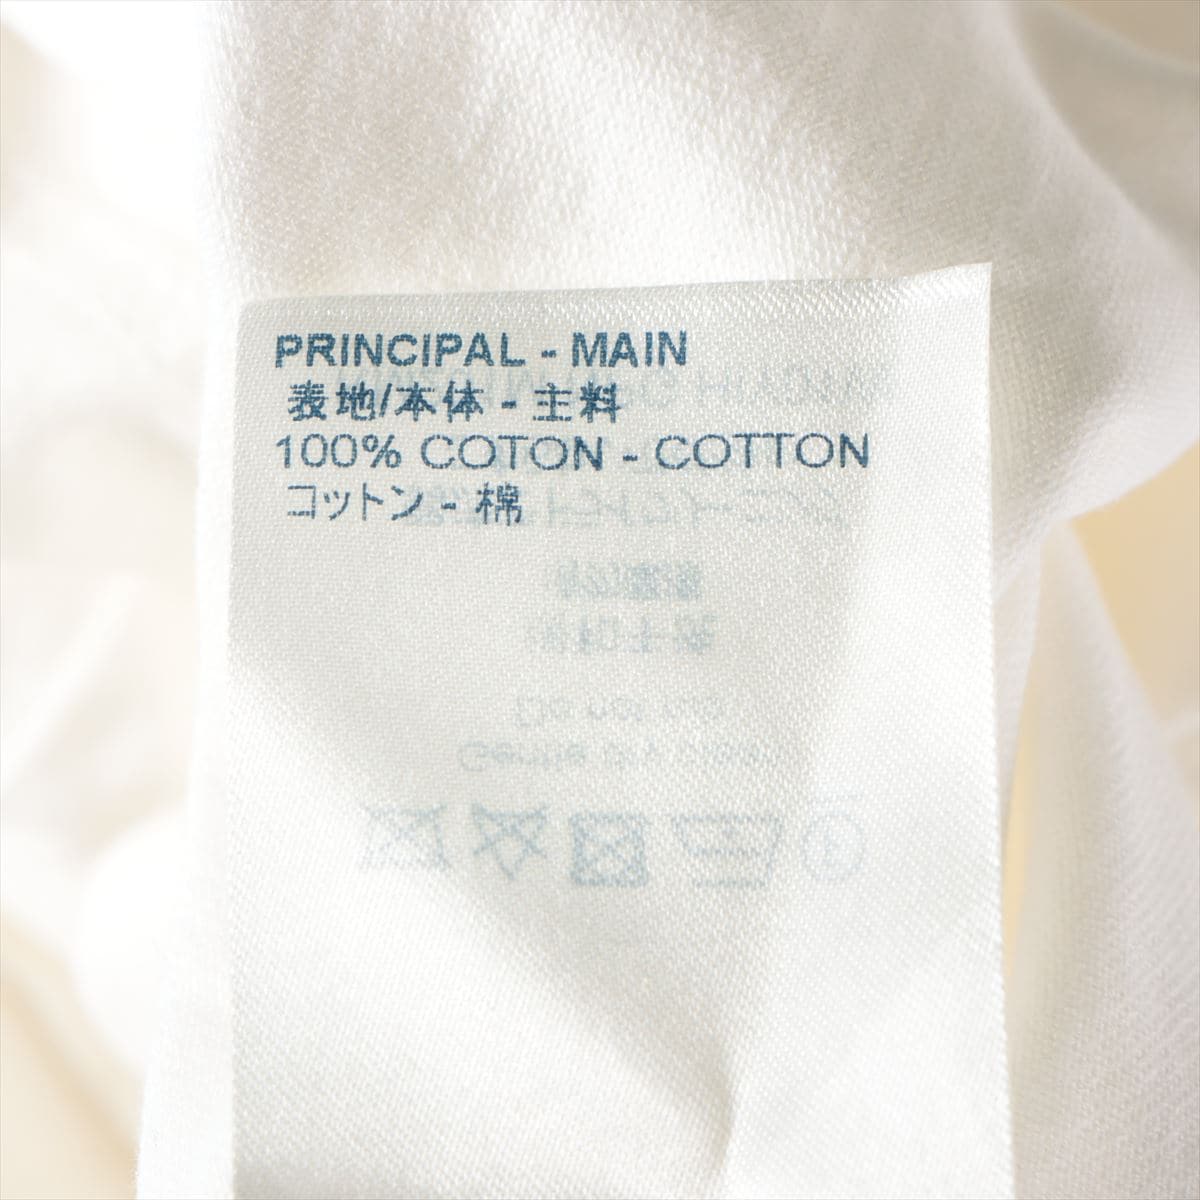 ルイヴィトン RM201M コットン Tシャツ S メンズ ホワイト  ウィズチェーンジャガードリブカラー